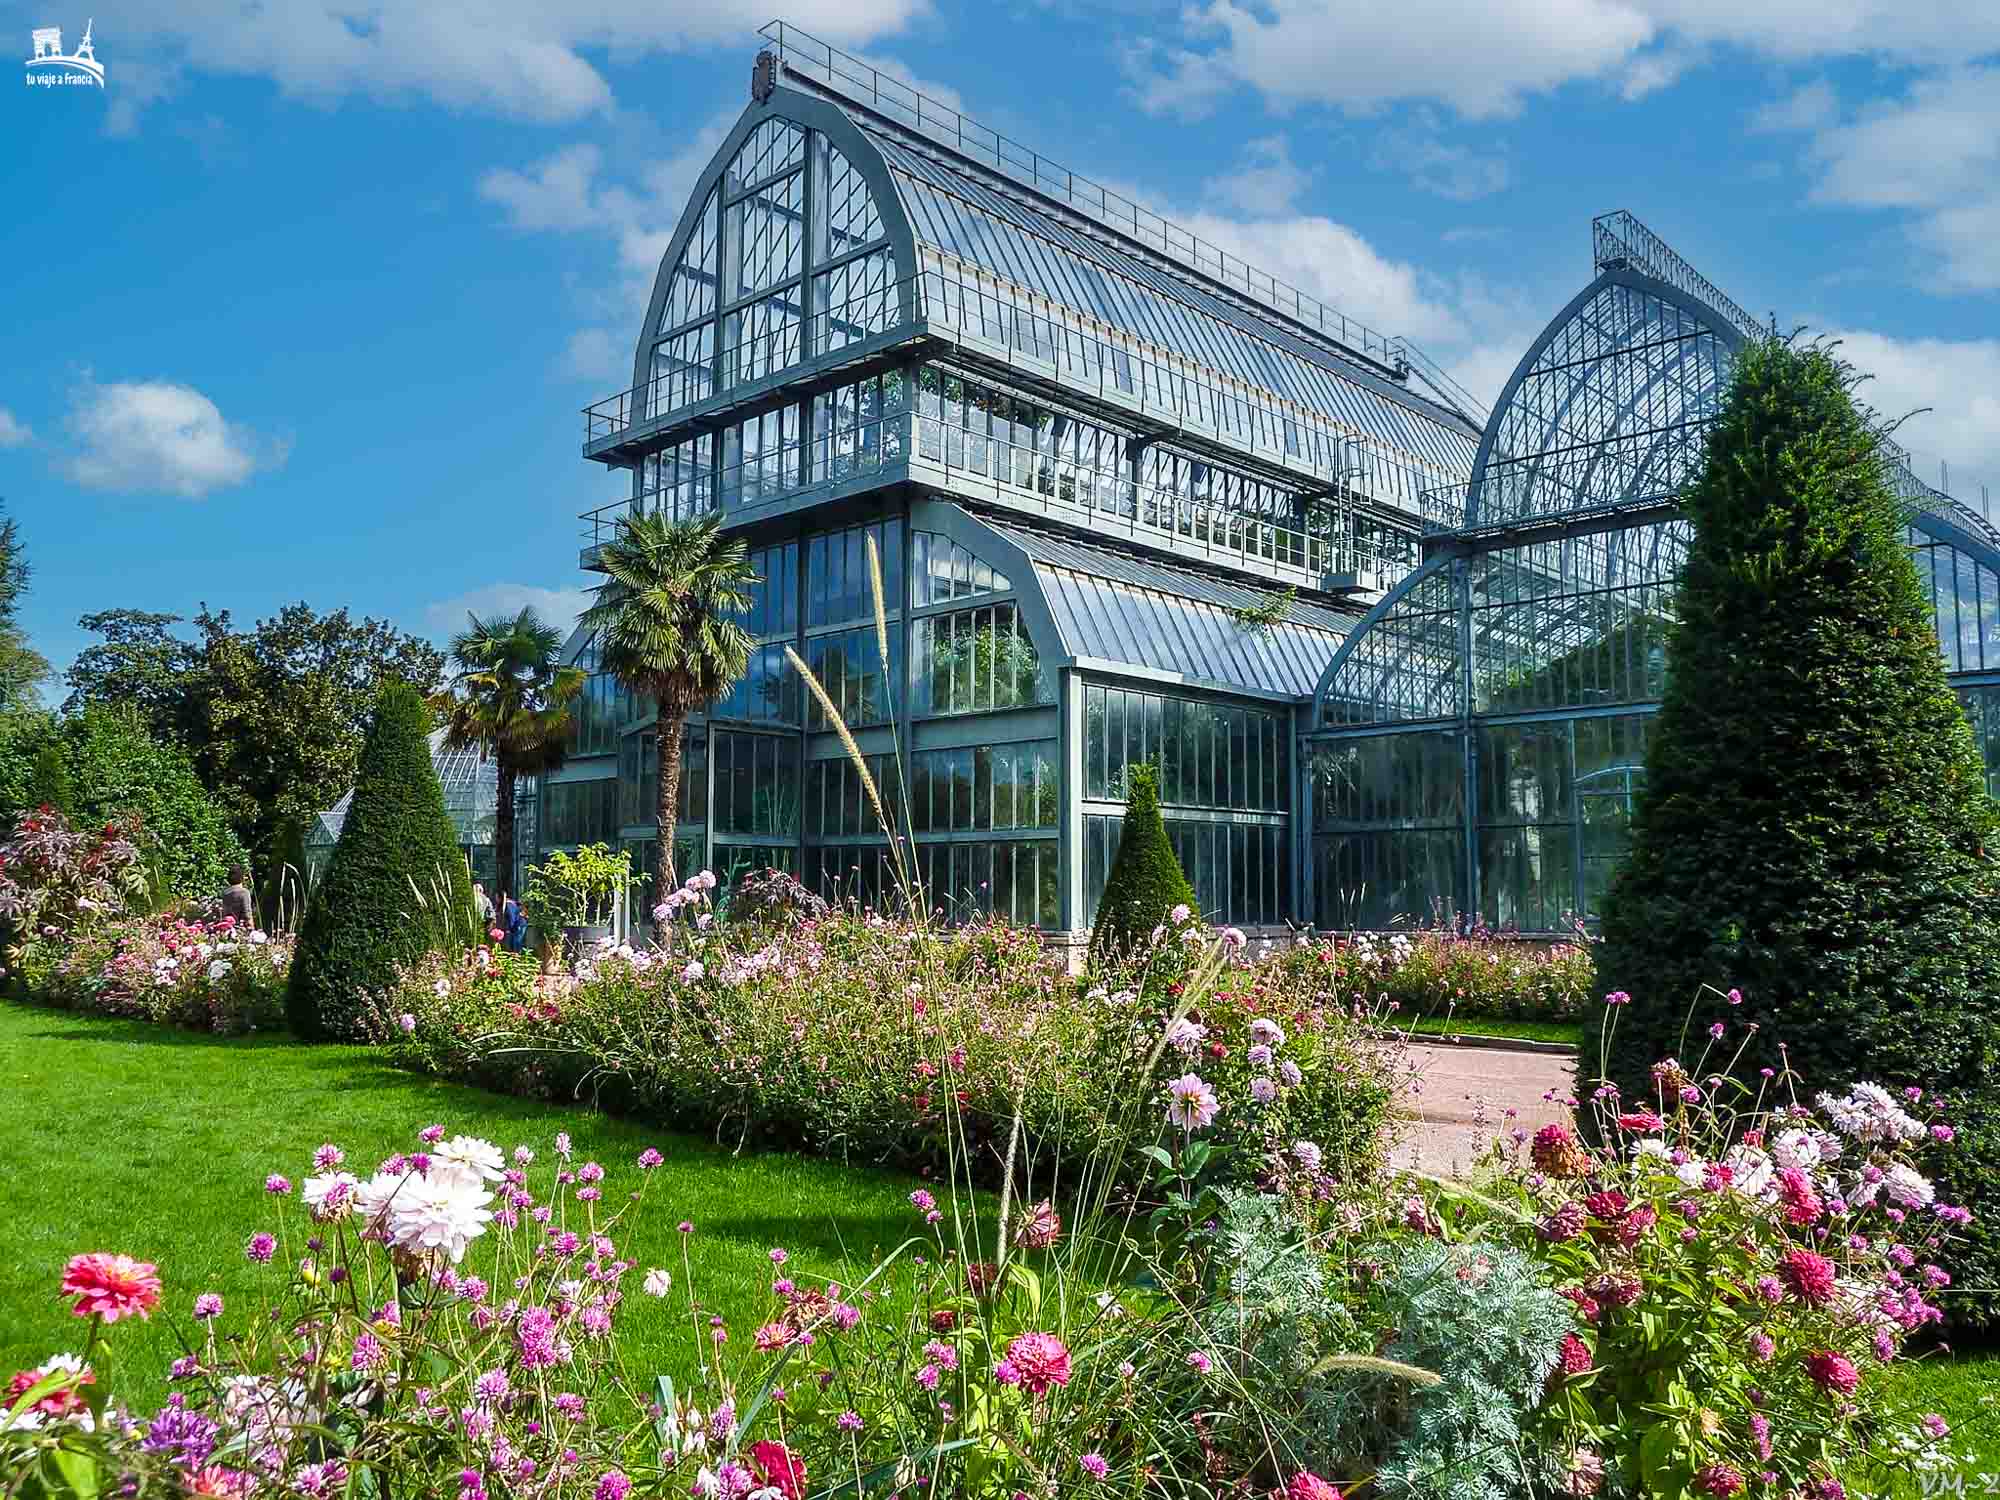 Jardín Botánico del Parque de la Tête d’Or Lyon